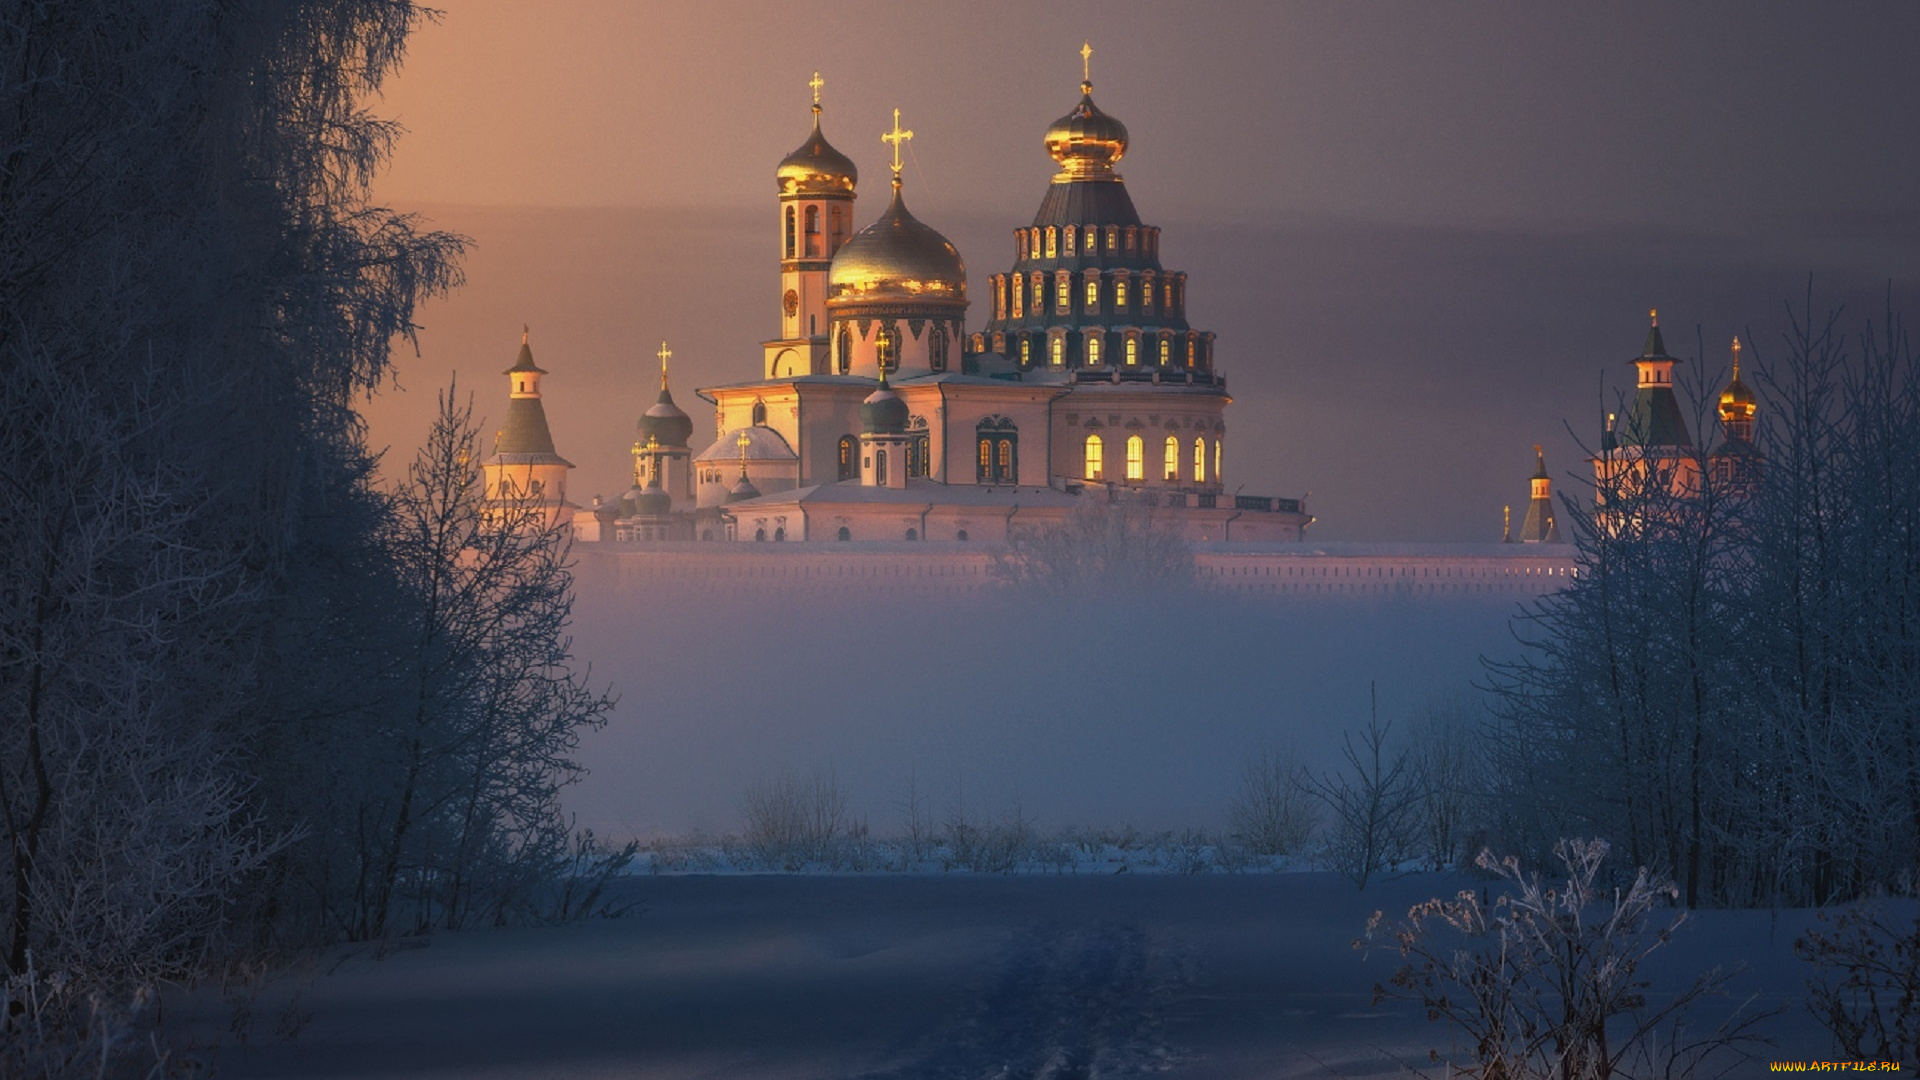 города, -, православные, церкви, , монастыри, новый, иерусалим, собор, купола, кресты, свет, солнца, дымка, тумана, снег, ilya, melikhov